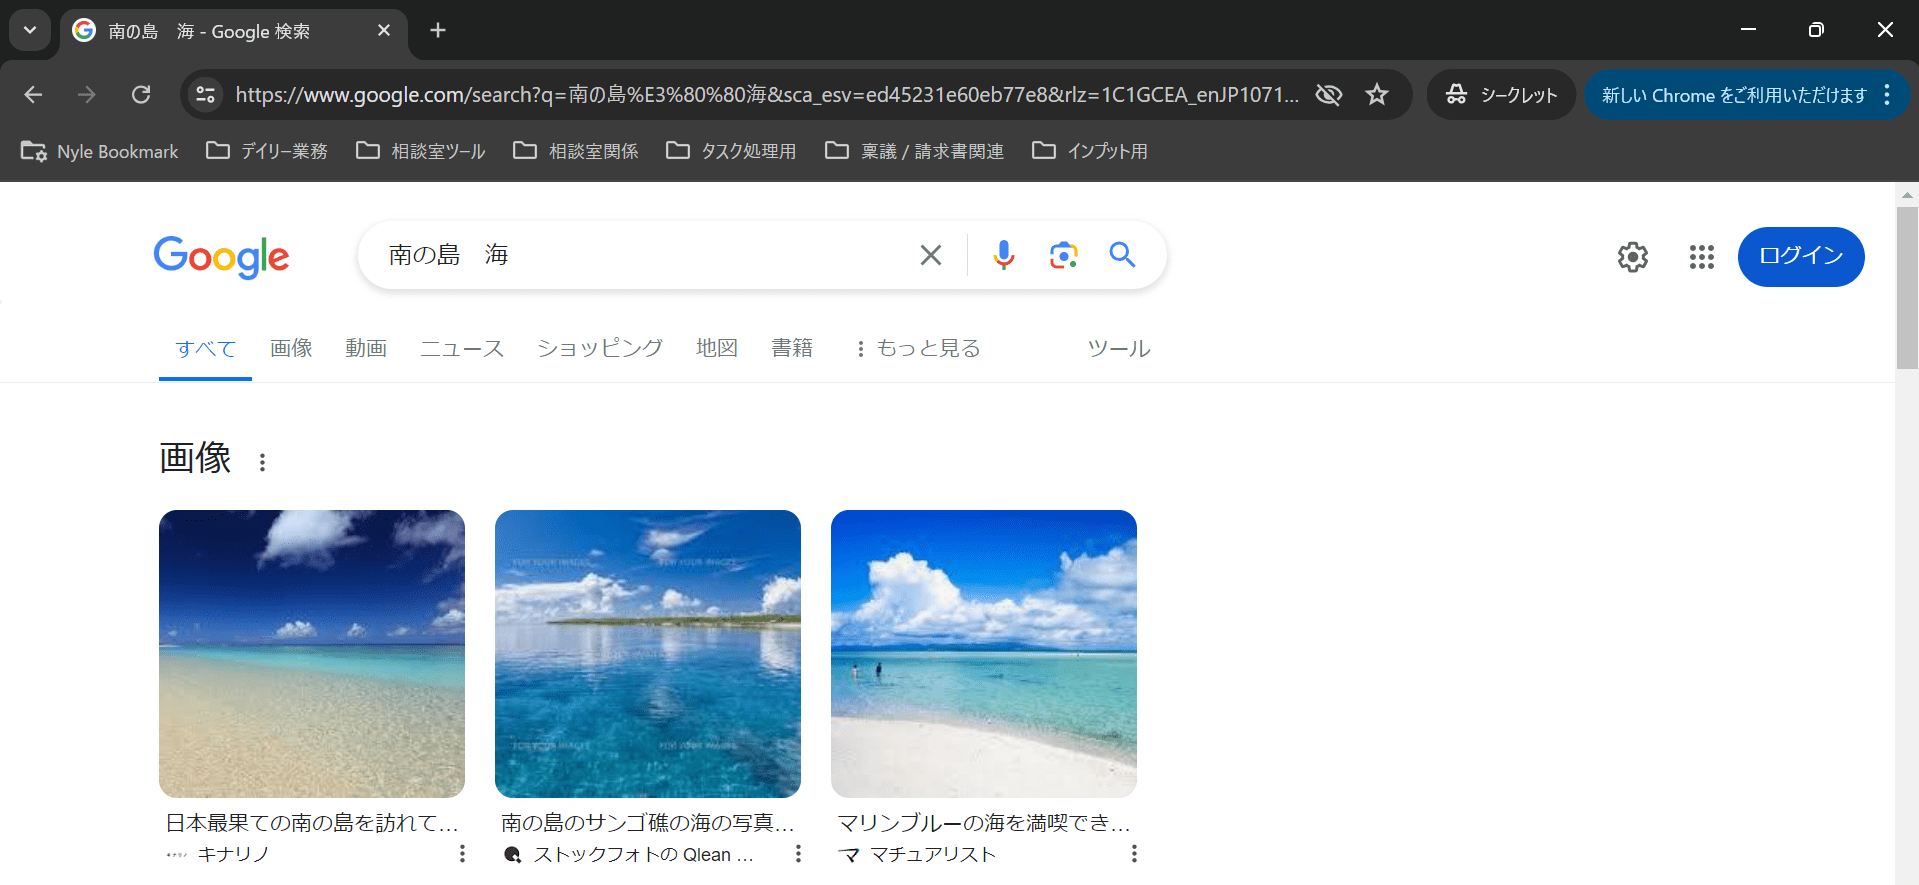 「南の島 海」と検索し、「海の画像検索結果」が表示されているGoogle検索結果画面キャプチャ